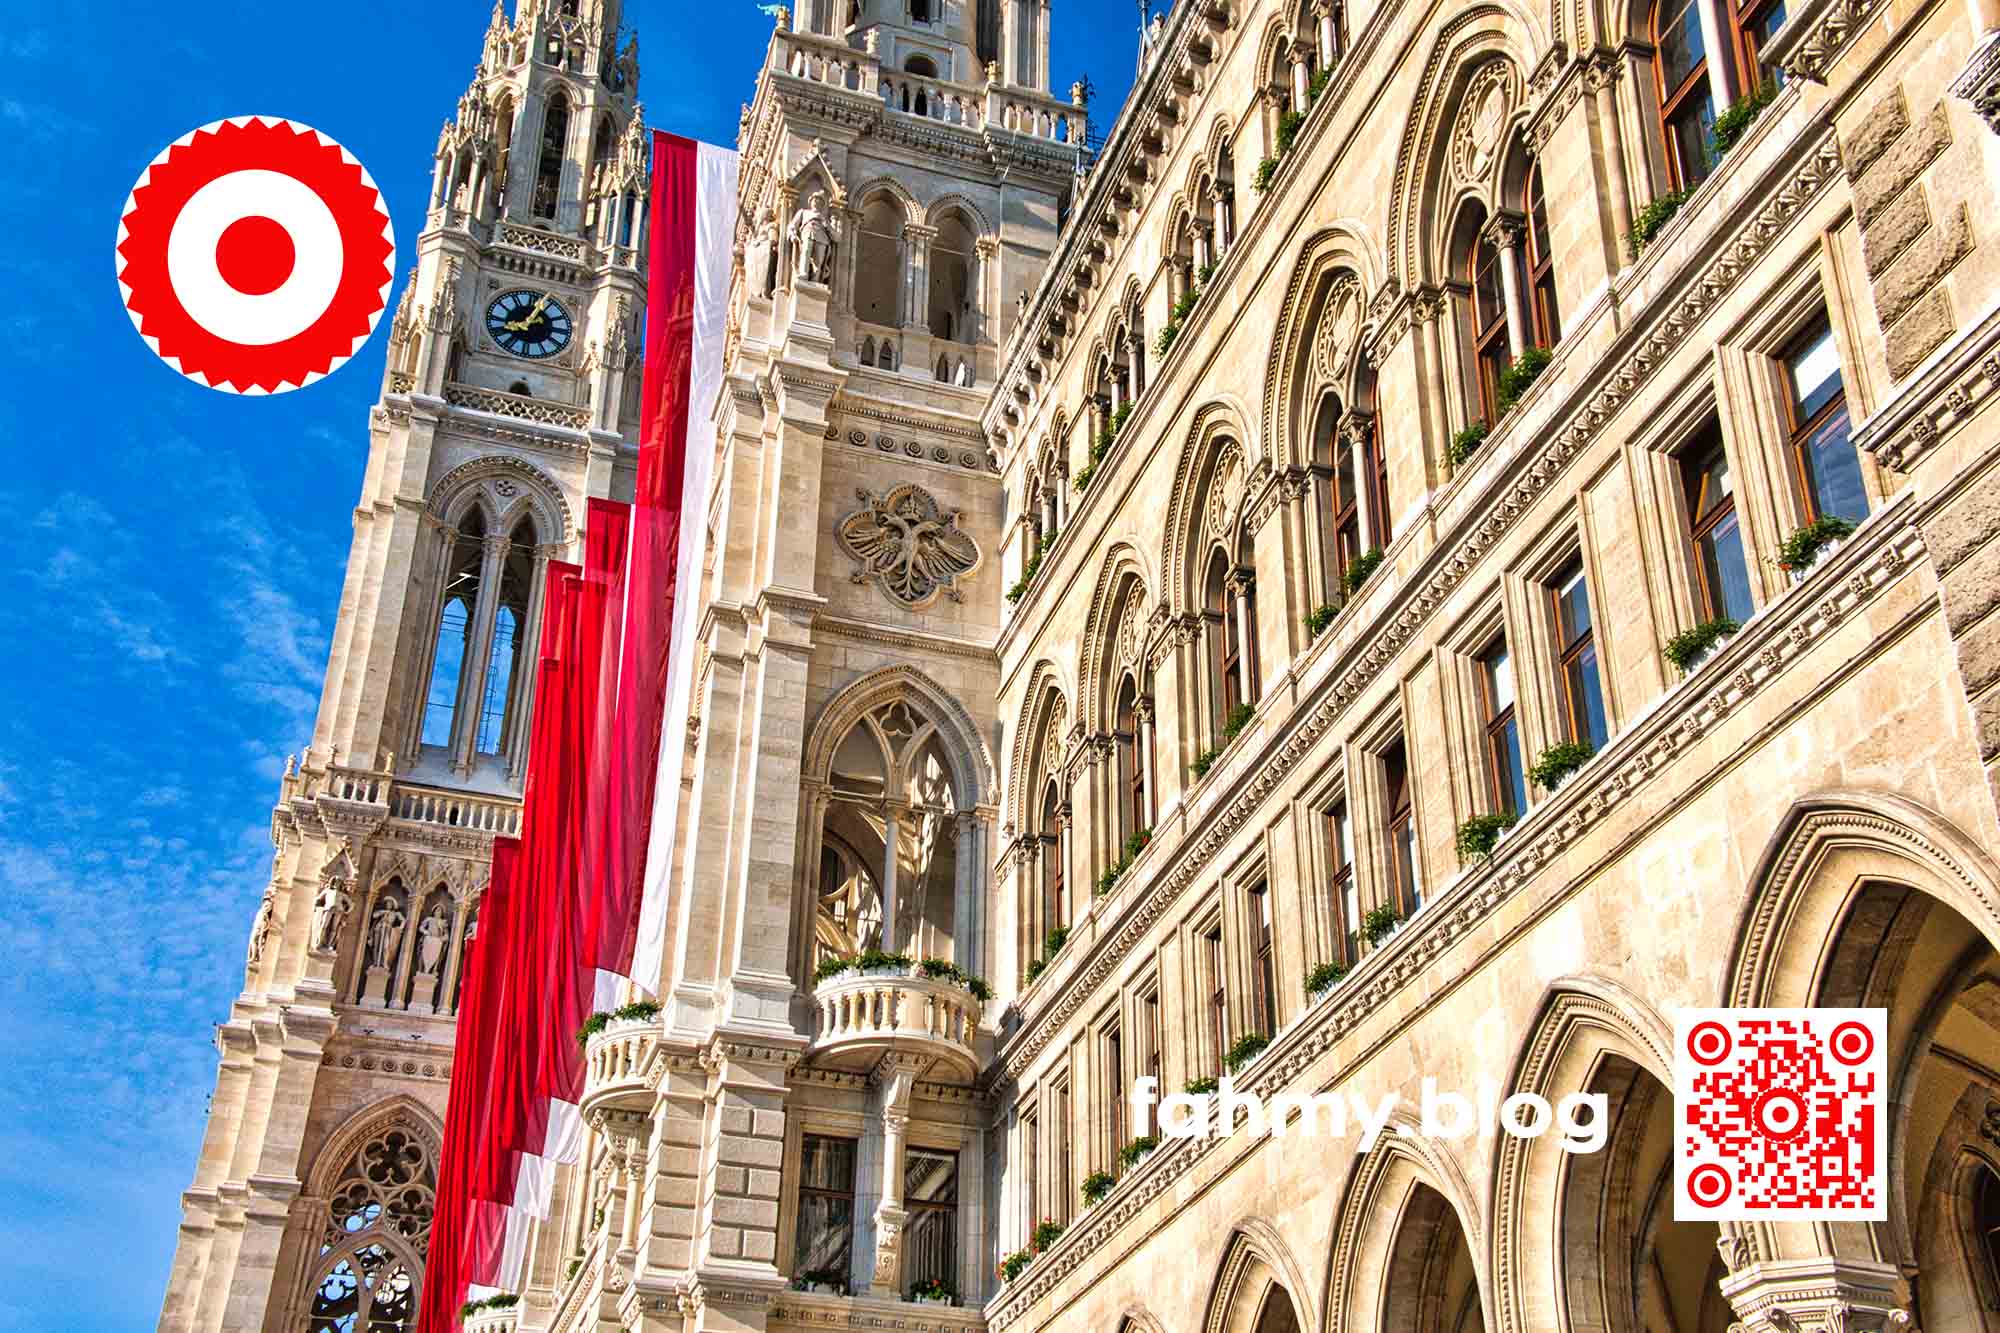 Das Foto vom Wiener Rathaus ist zwar nicht am ersten Mai aufgenommen worden, sondern ein paar Tage später. Es hingen noch die rot-weißen langen Fahnen von der Vorderfassade herab. Der Himmel war strahlend blau. Es war früh morgens: fünf Minuten nach Acht, wie die Rathausuhr zeigt. In der linken oberen Ecke findet sich das rot-weiß-rote Logo von fahmy.blog und in der rechten unteren Ecke der rot-weiße QR-Code und der Schriftzug "fahmy.blog". Das Foto entstand im Mai 2022.